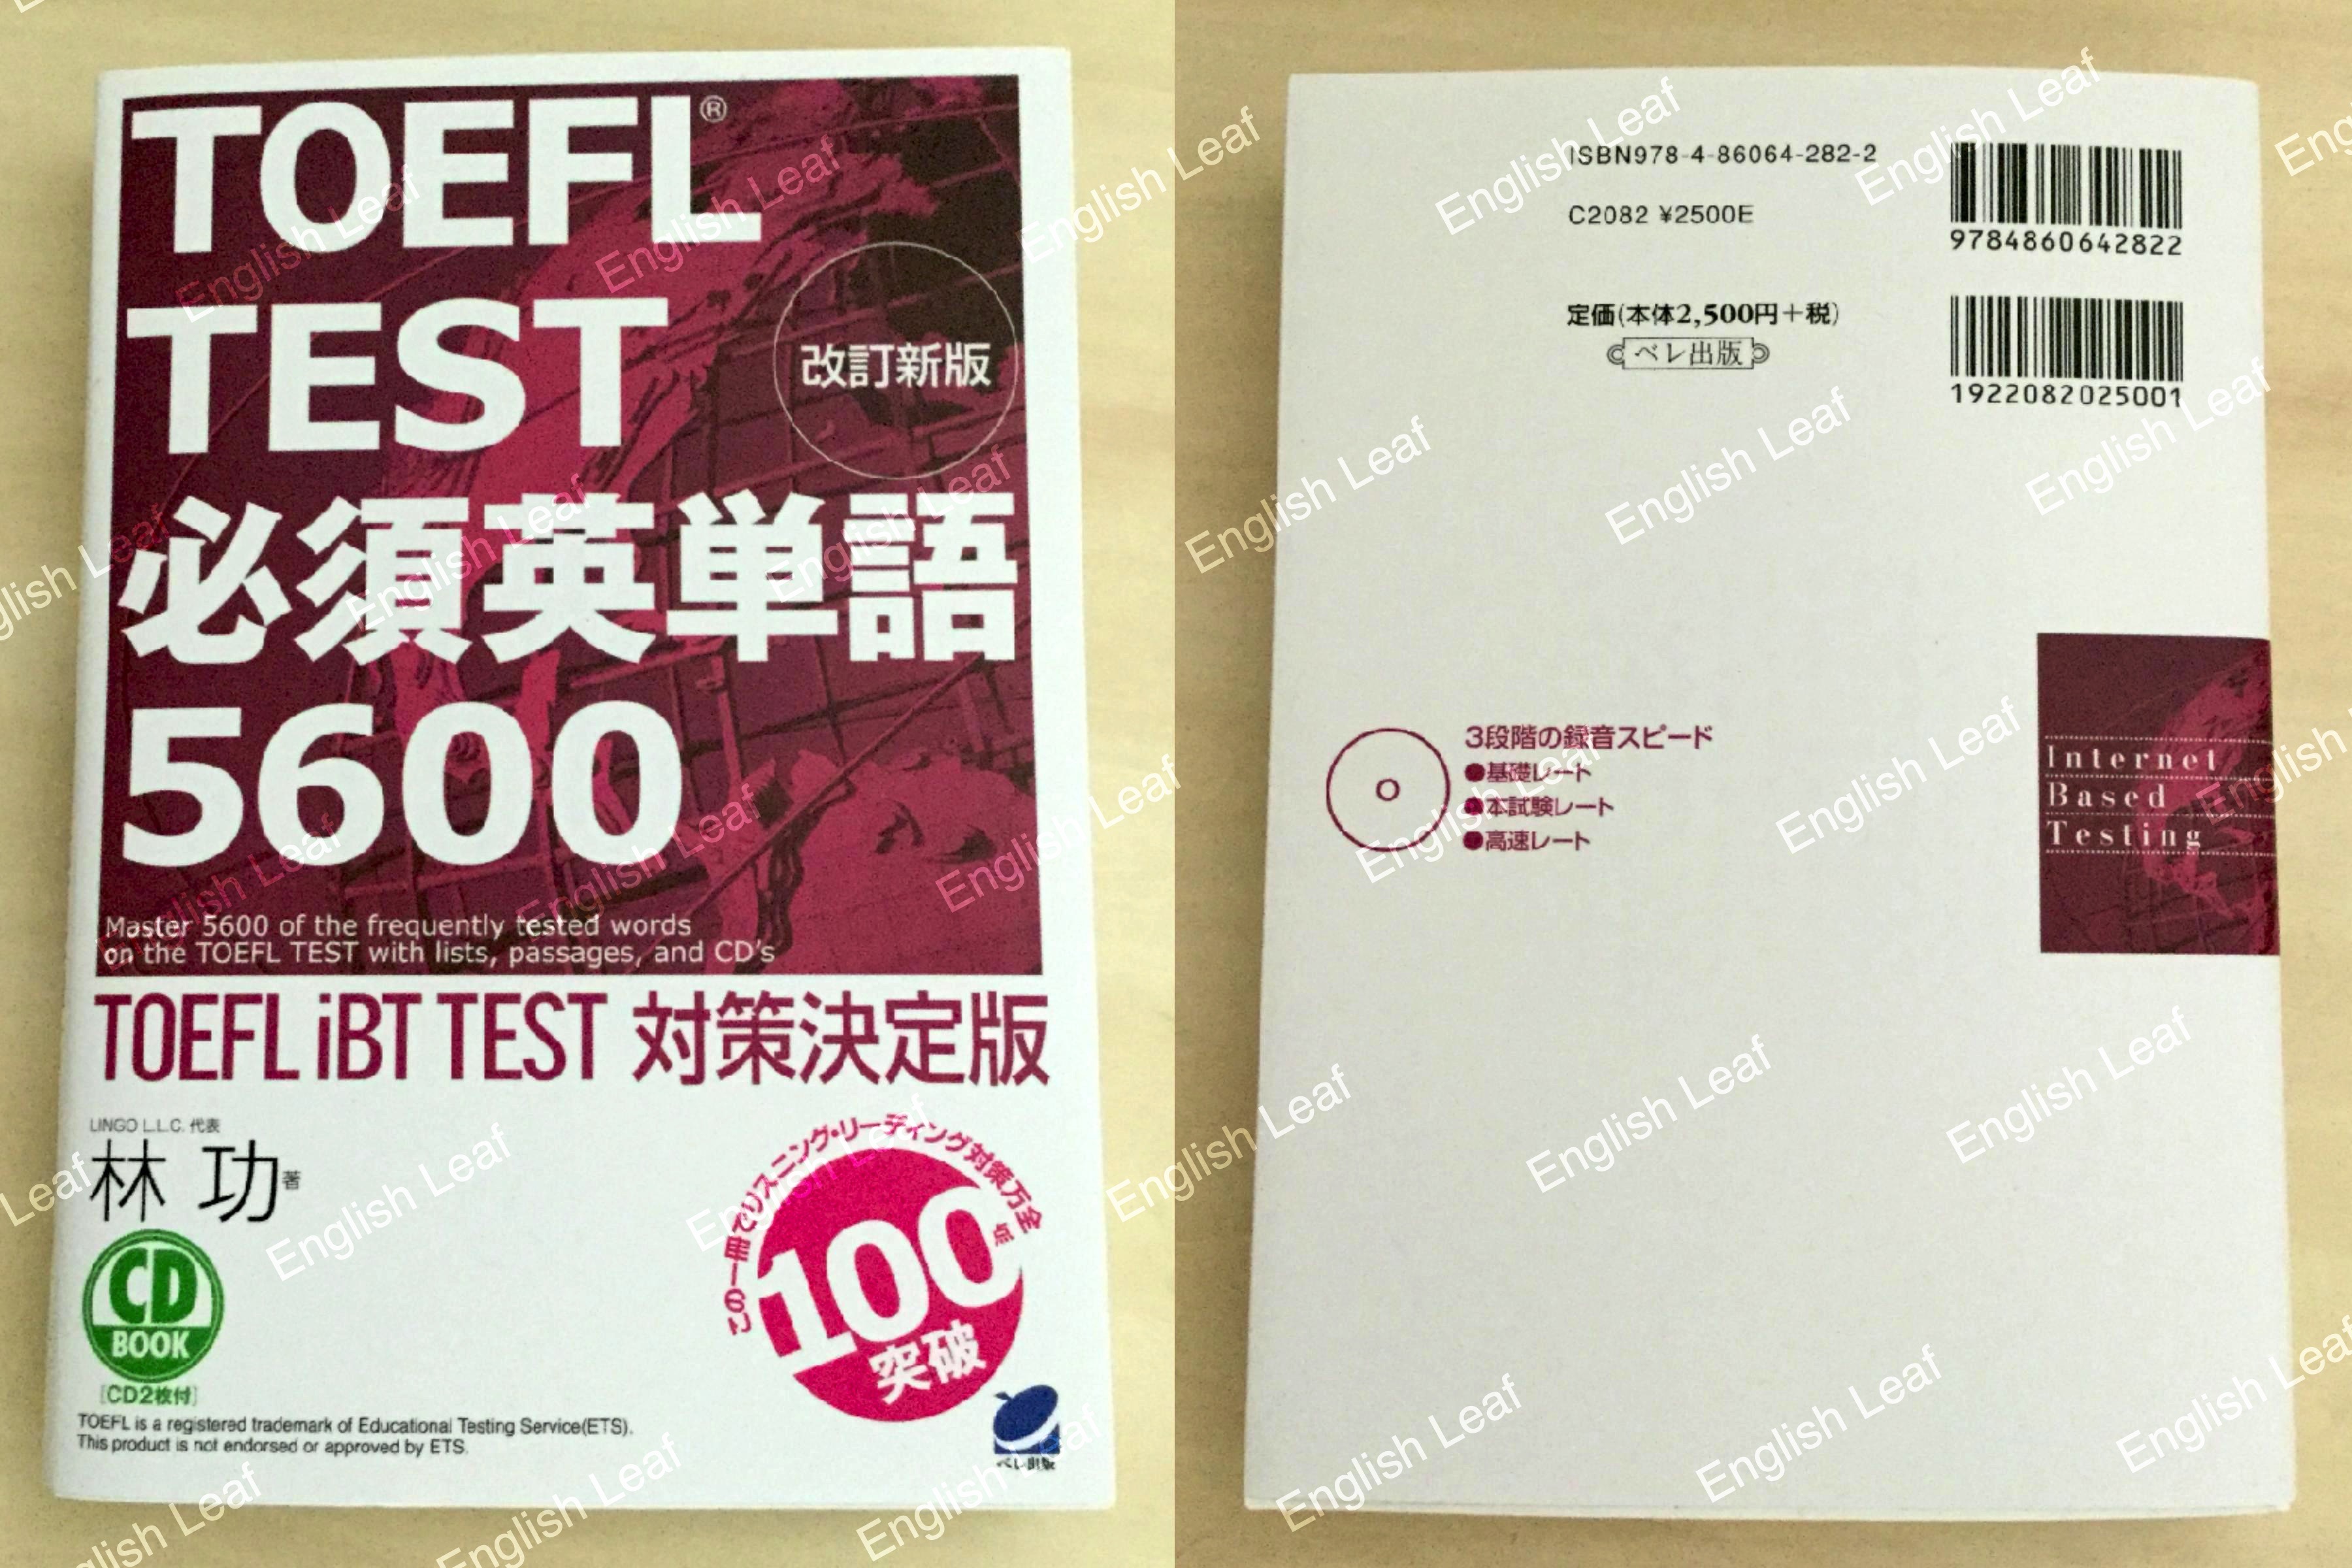 中身 使い方 改訂新版 Toefl Test 必須英単語5600 Cd Book レビュー English Leaf